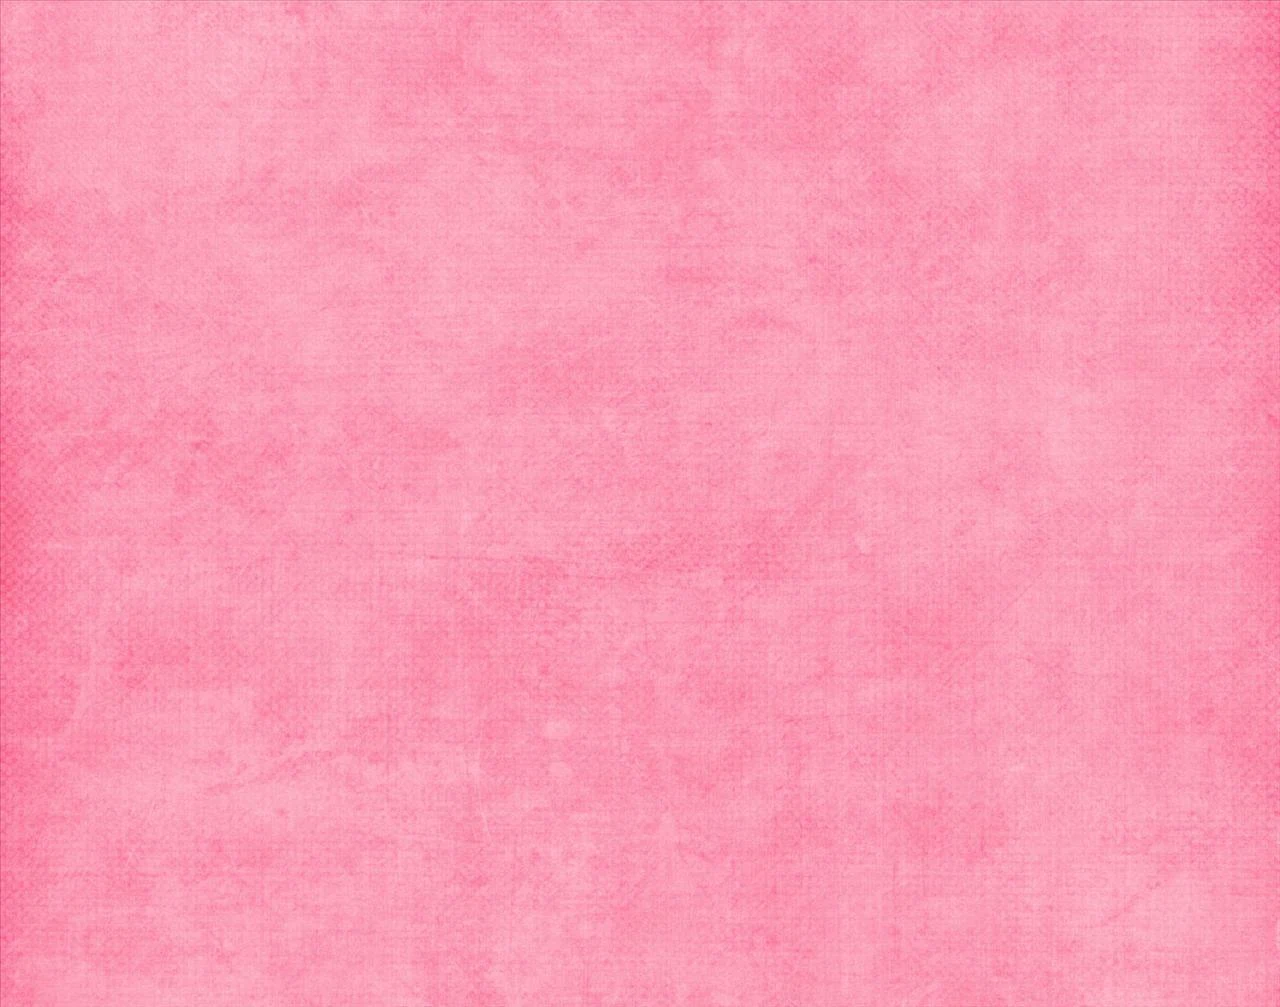 Wallpaper Gradasi Warna Pink